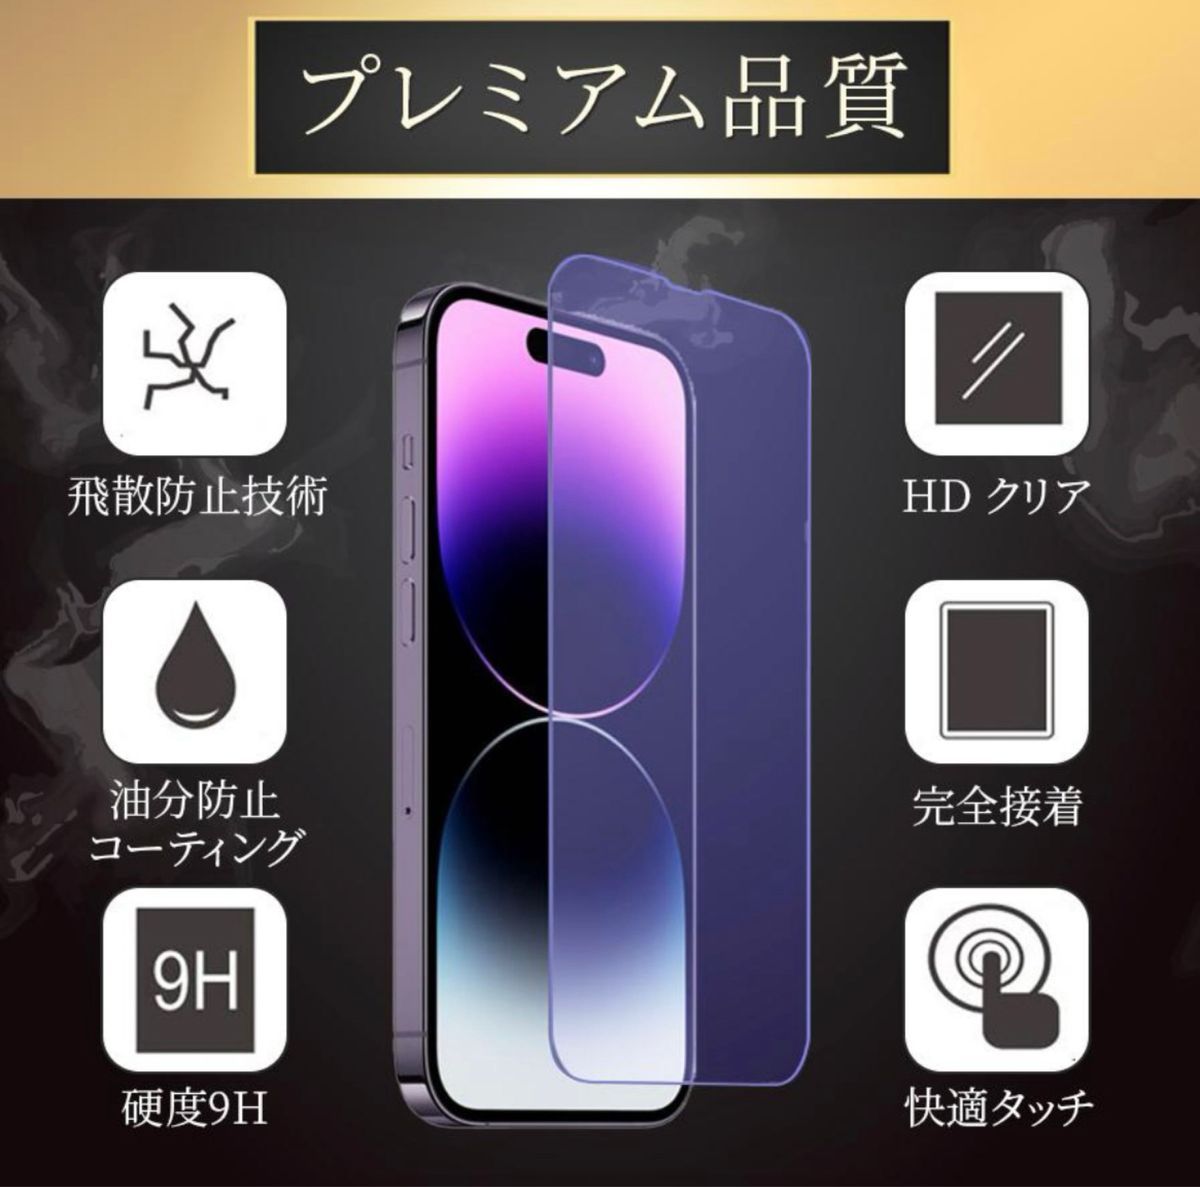 iPhone13Pro ガラスフィルム(ブルーライトカット)+カメラカバー(レンズカバー) 各2枚(合計4枚) ガイド枠付 日本製